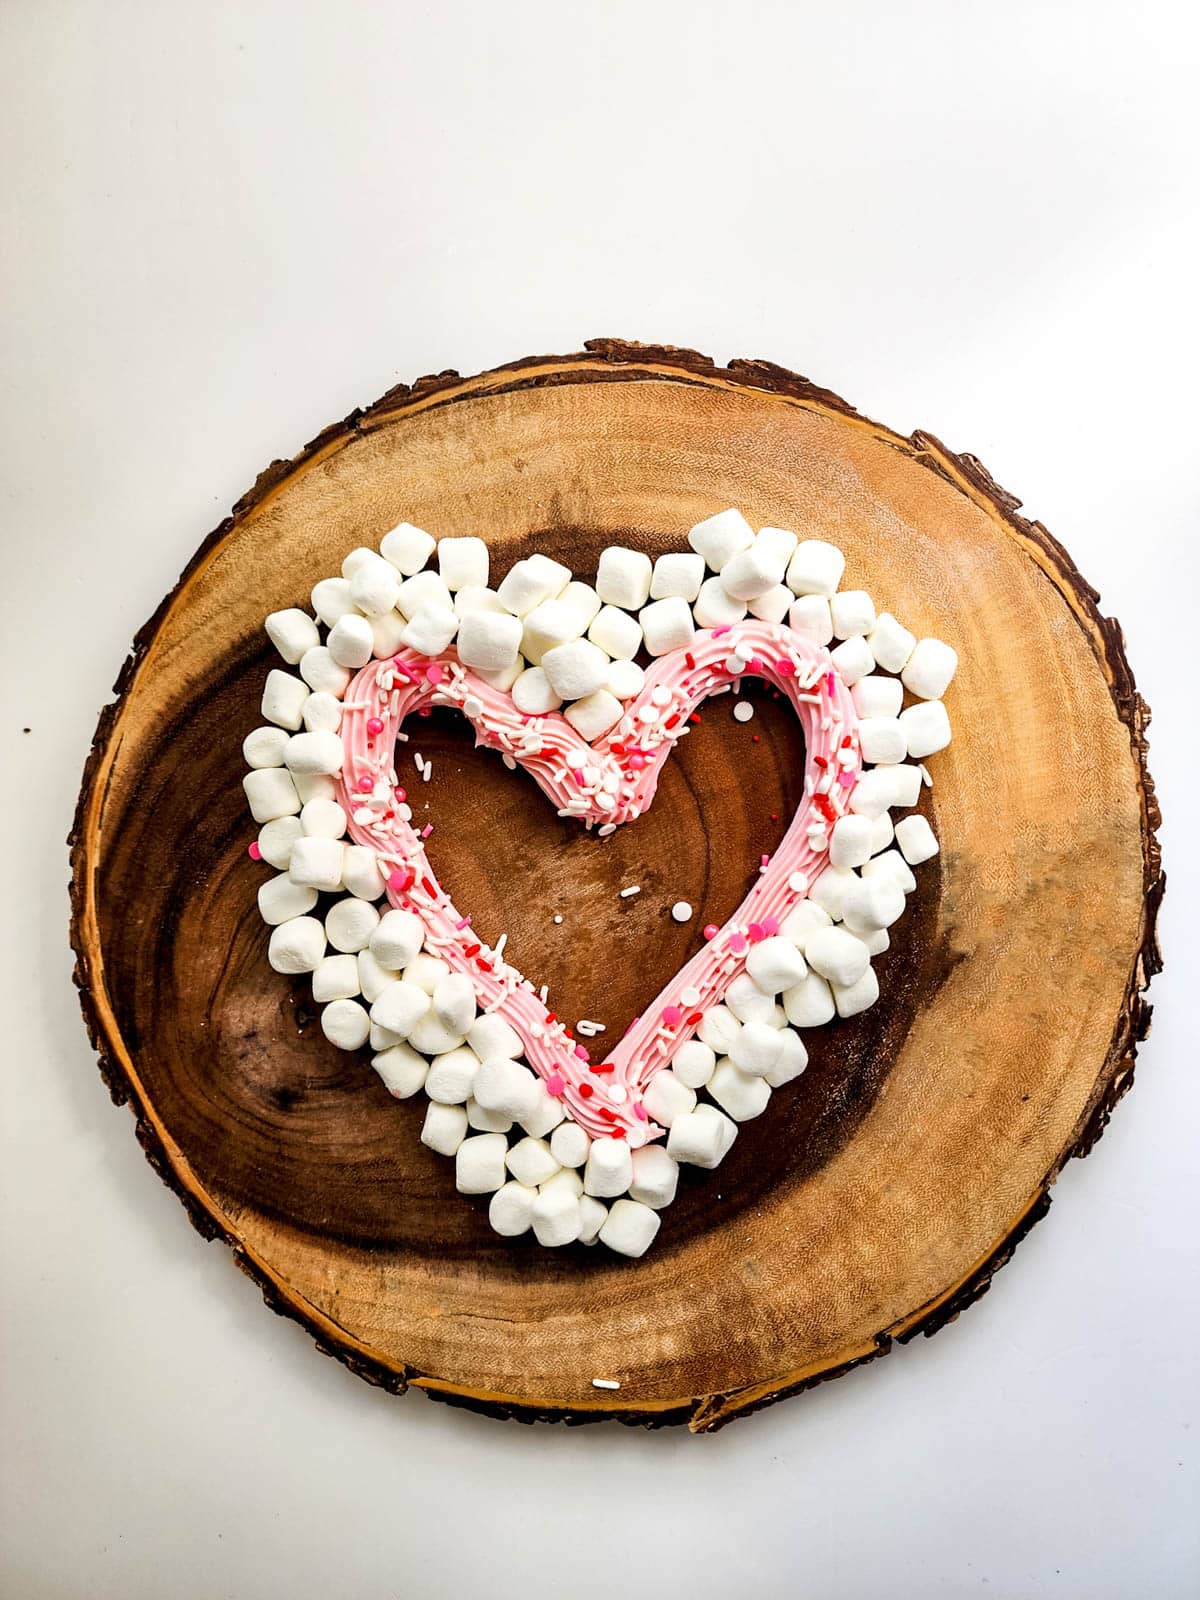 Marshmallows in heart shape